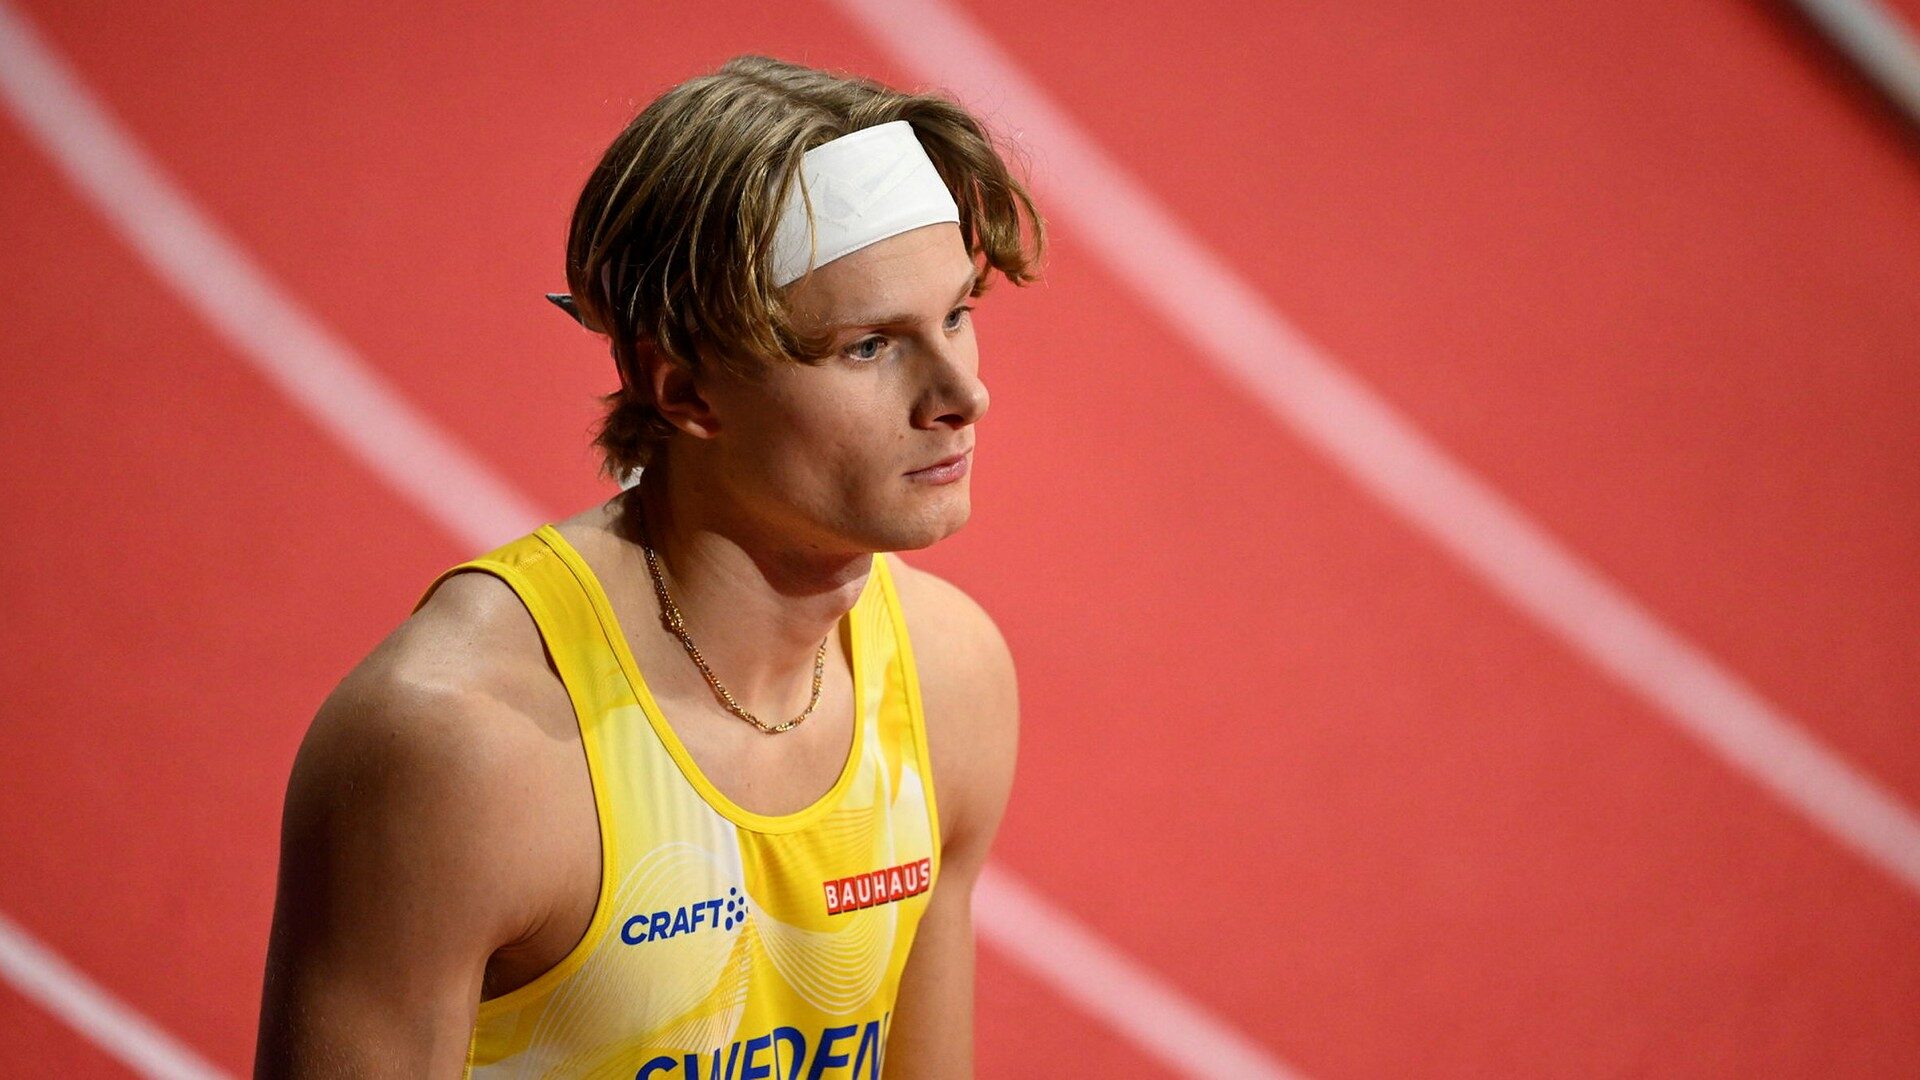 Carl Bengtström med personbästa på 400 meter häck: ”Bra känsla” - Dagens Nyheter